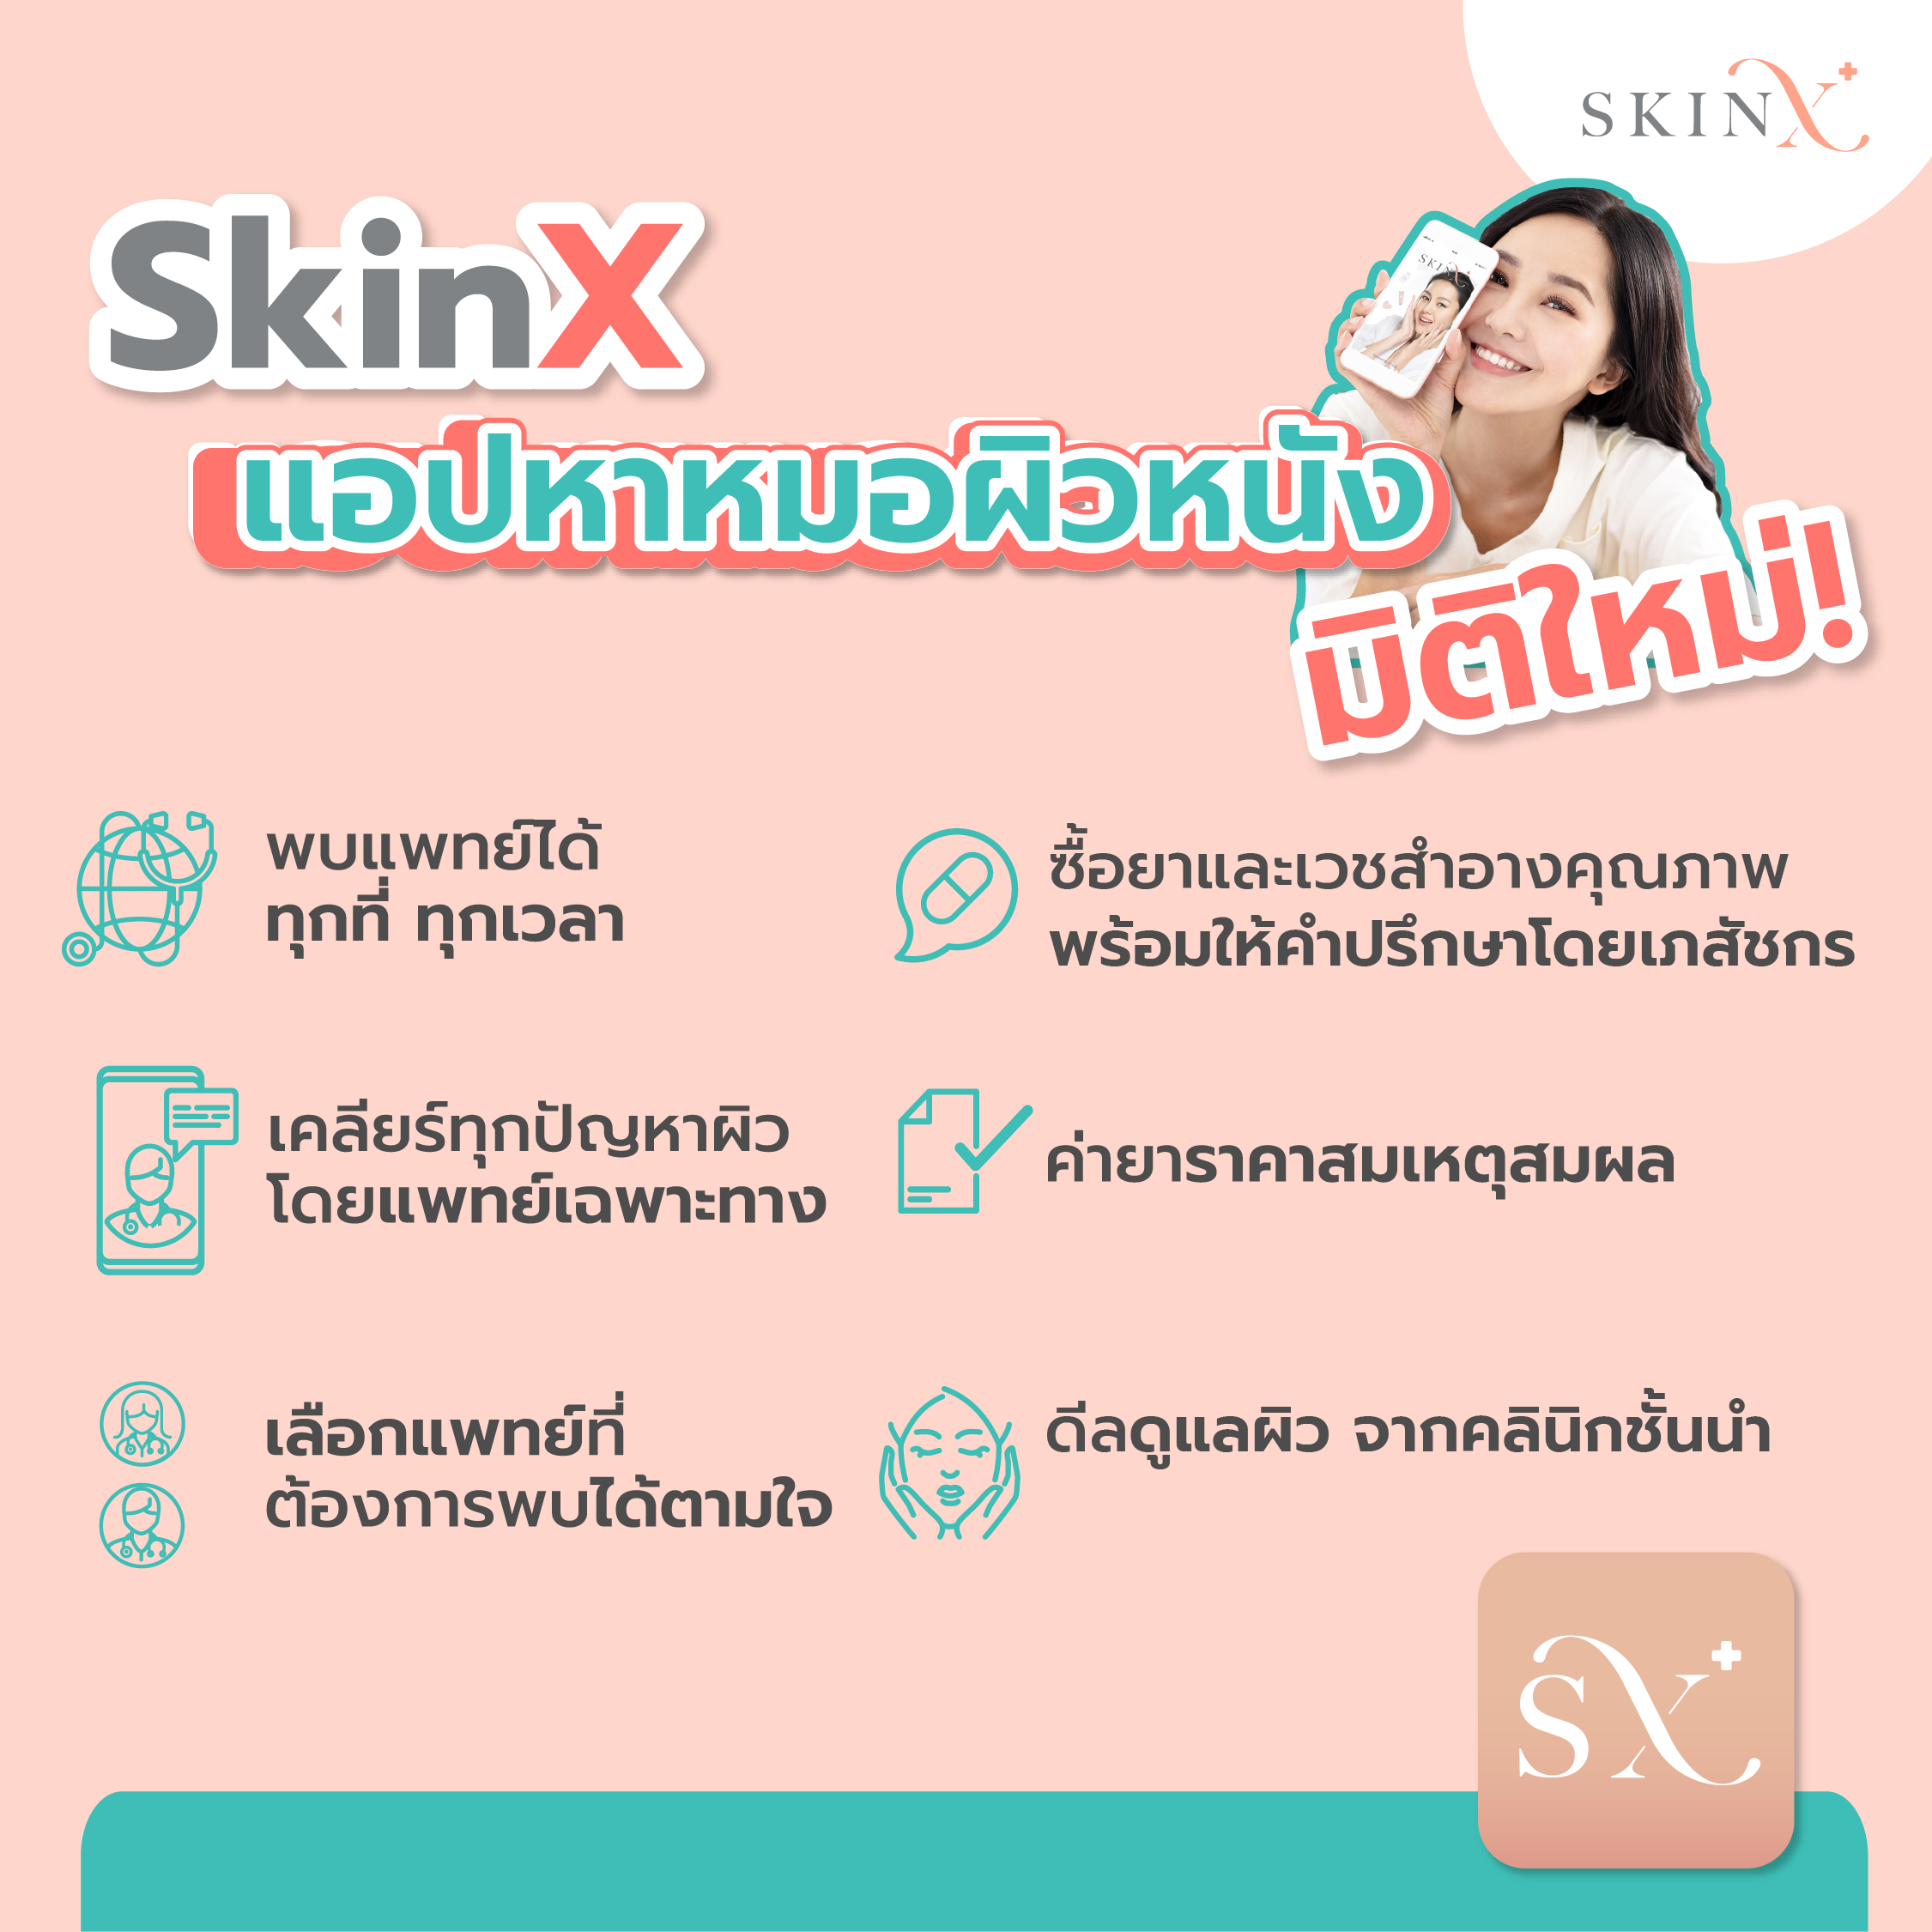 ภาพประกอบของ SkinX E-Voucher ส่วนลด 1,500 บาท สำหรับทุกการใช้จ่ายใน SkinX